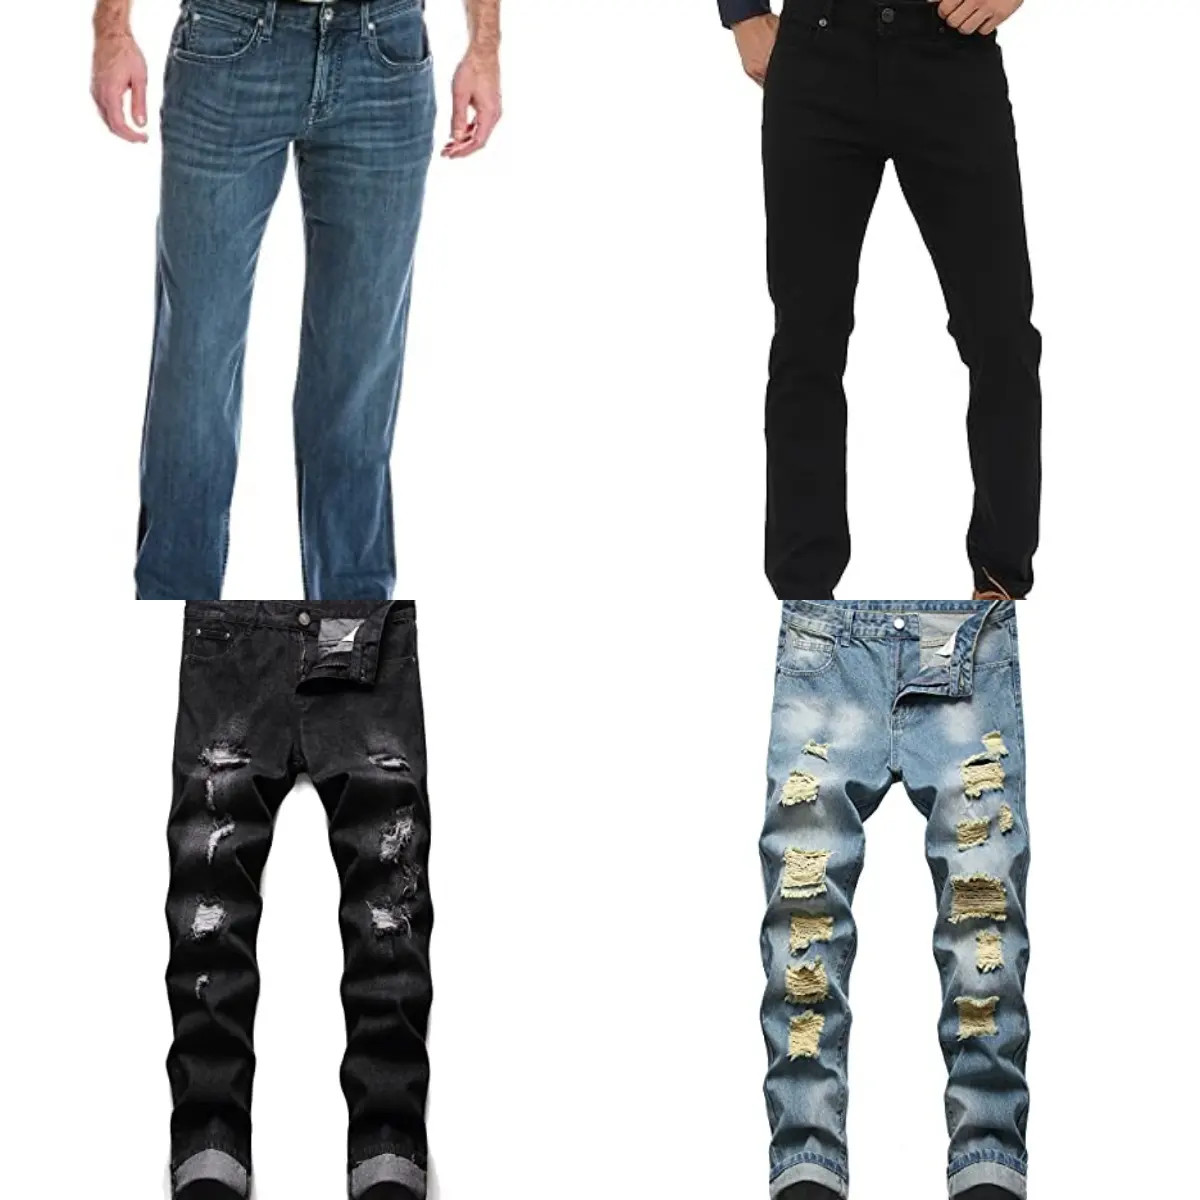 Overtollige Kleding Merk Super Lage Prijs Overstock Merken Heren Denim Jeans Skinny Straight Jeans Broek Heren Jongens Denim Broek